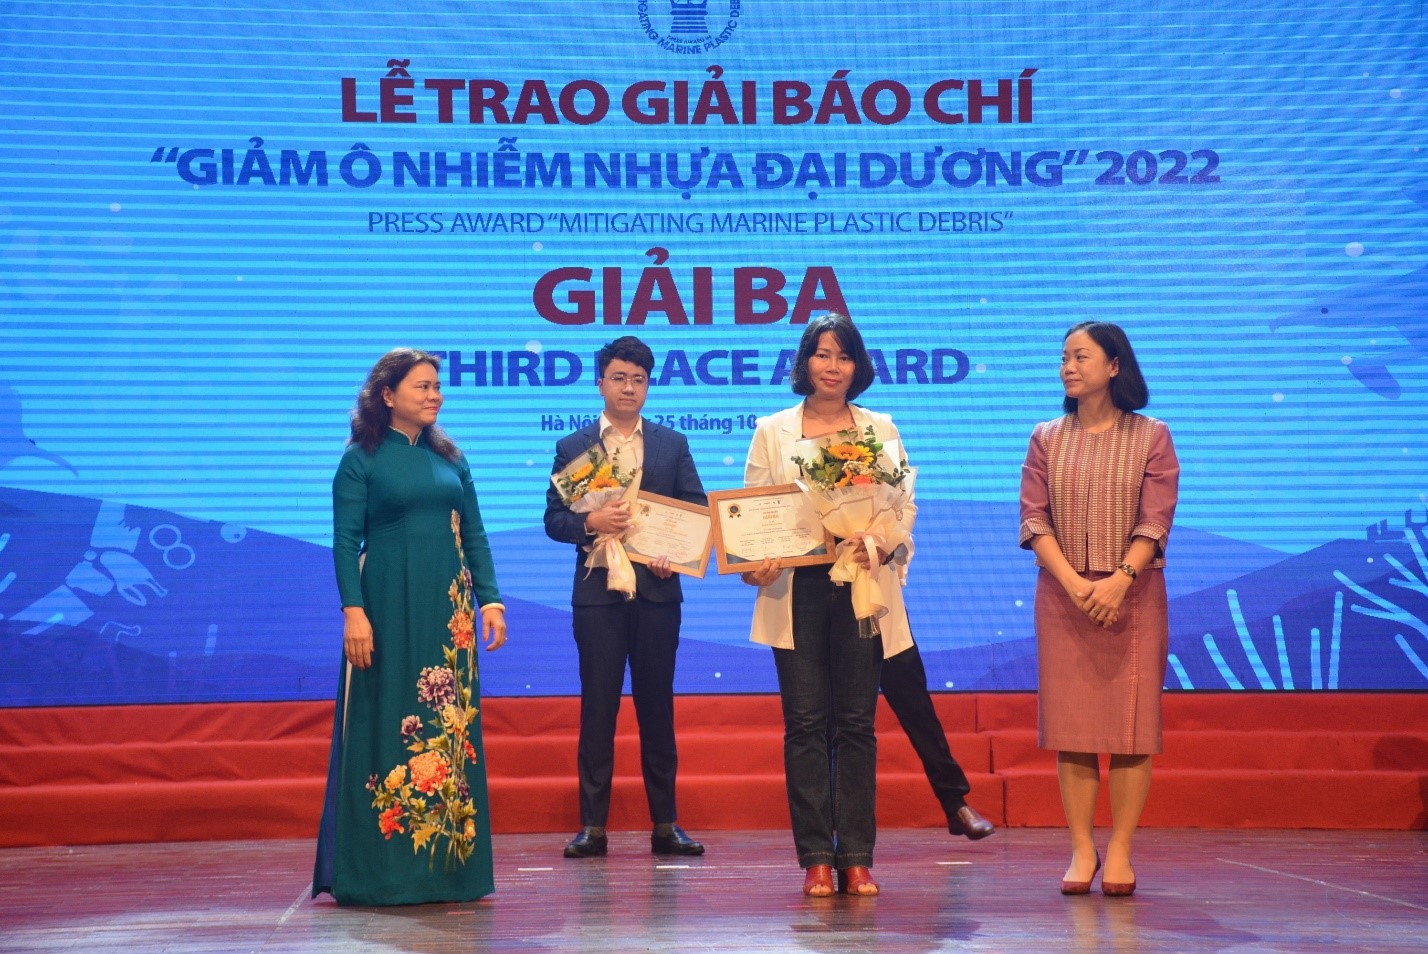 Tác giả Trần Thị Hường (Báo Công Thương) nhận Giải Ba Giải báo chí Giảm ô nhiễm nhựa đại dương năm 2022